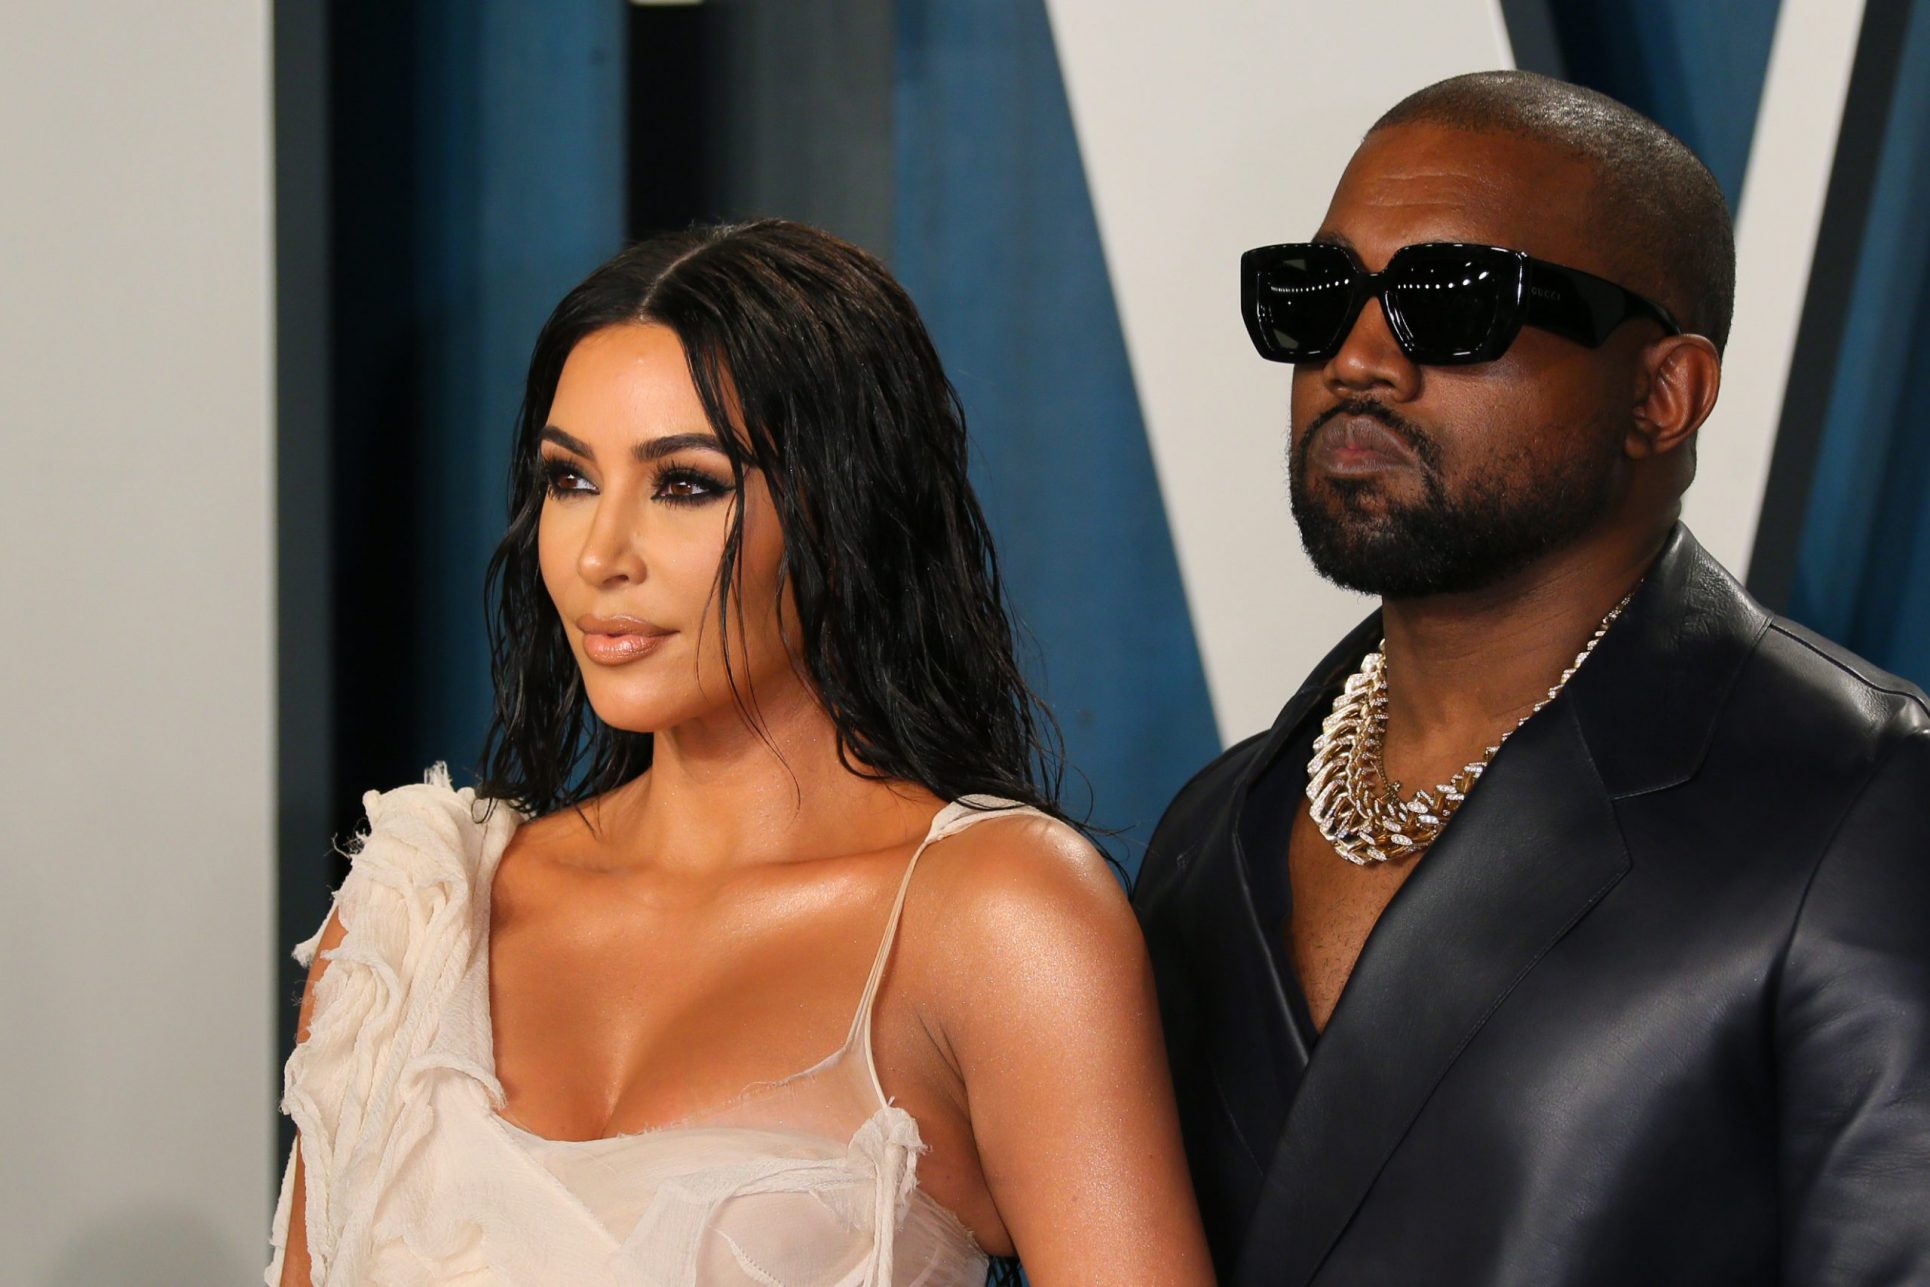 “Sé que te hice daño, por favor perdón”: la disculpa pública de Kanye West a su esposa Kim Kardashian